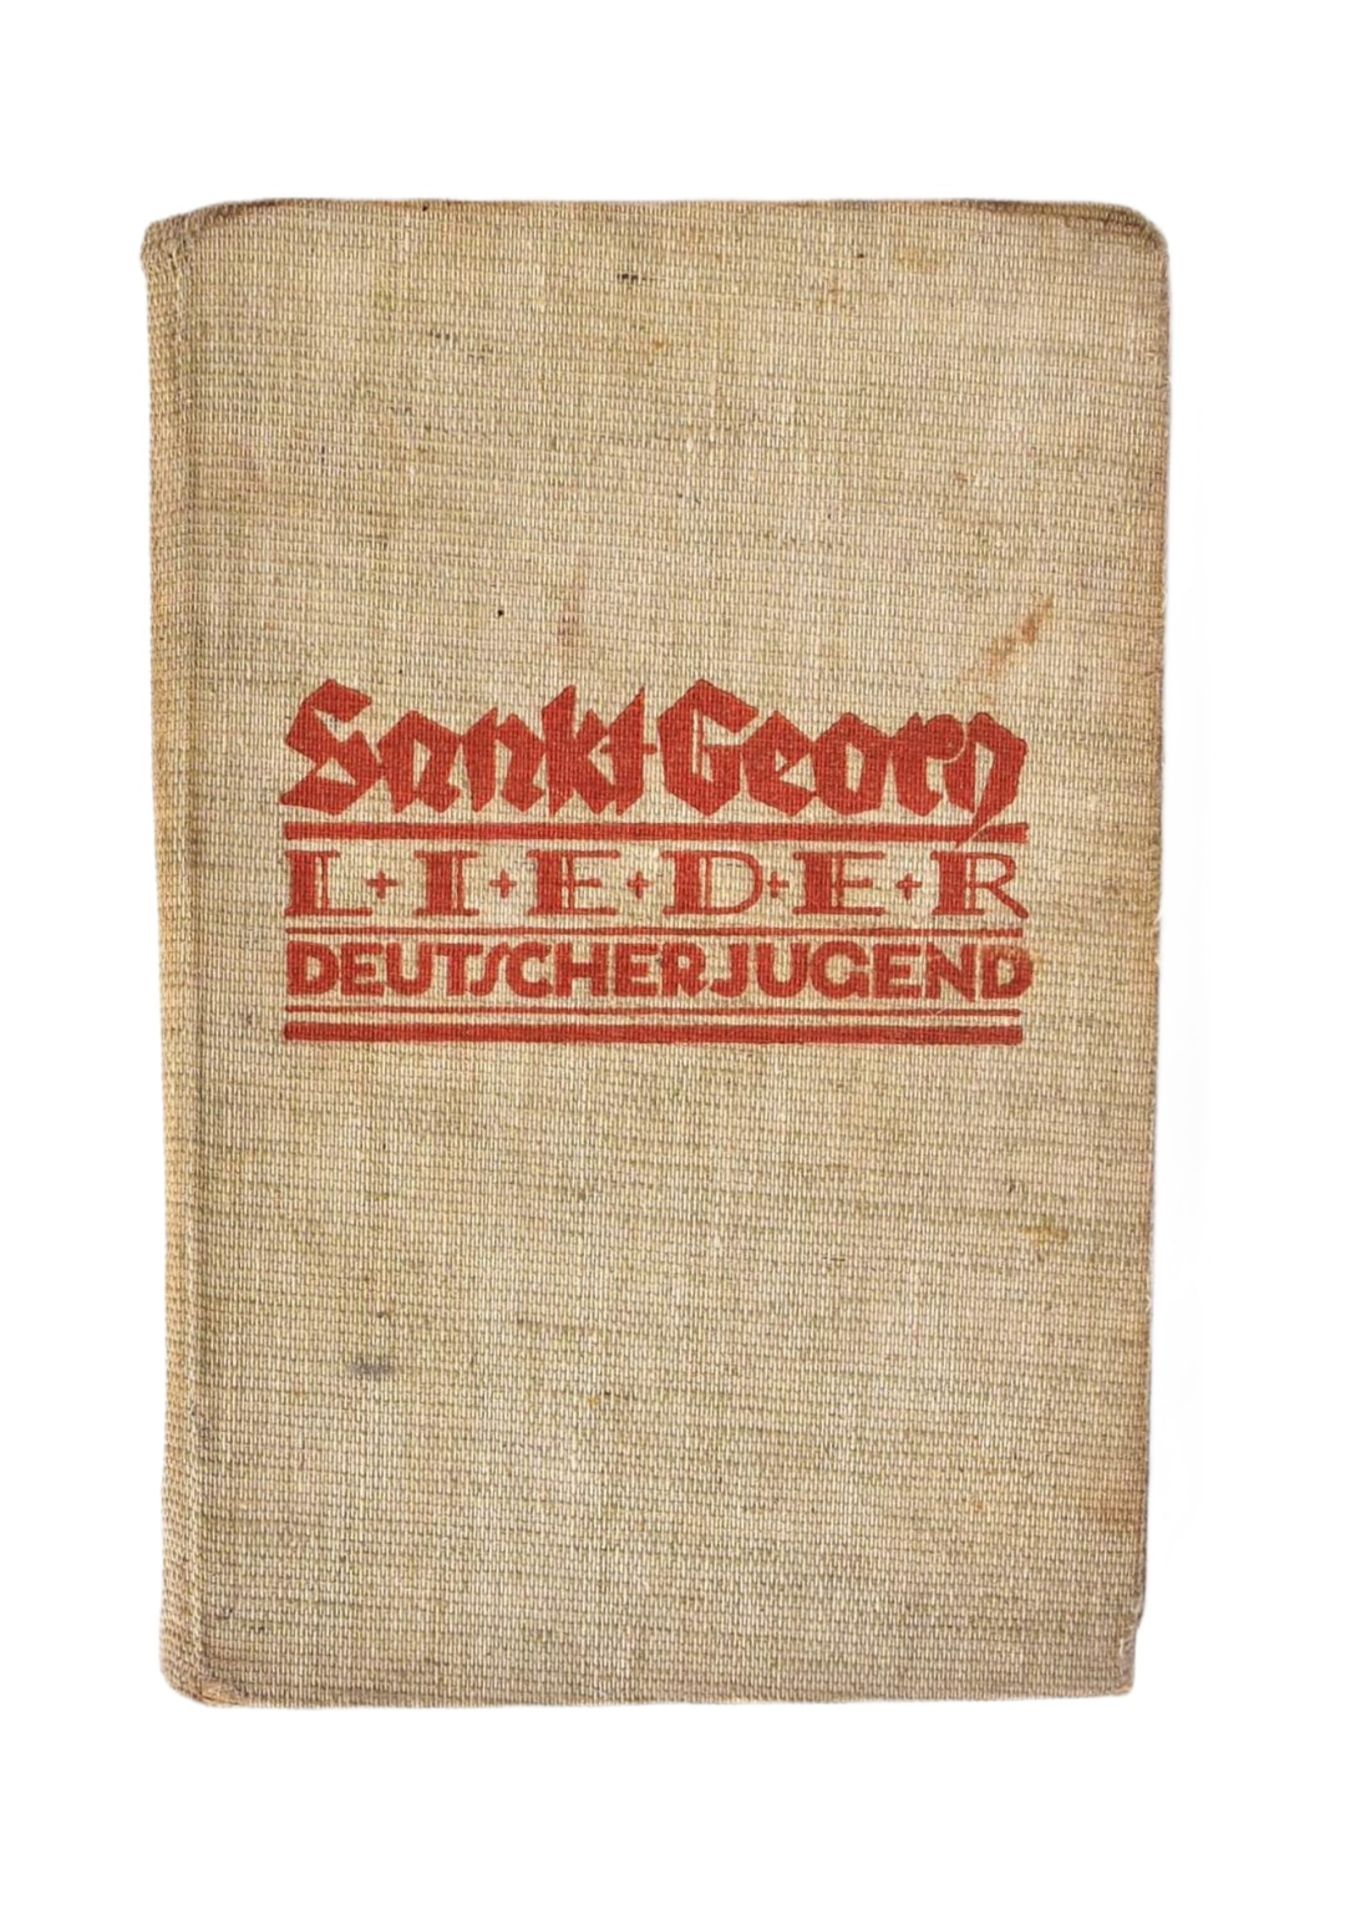 PRE SECOND WORLD WAR GERMAN SONG BOOK